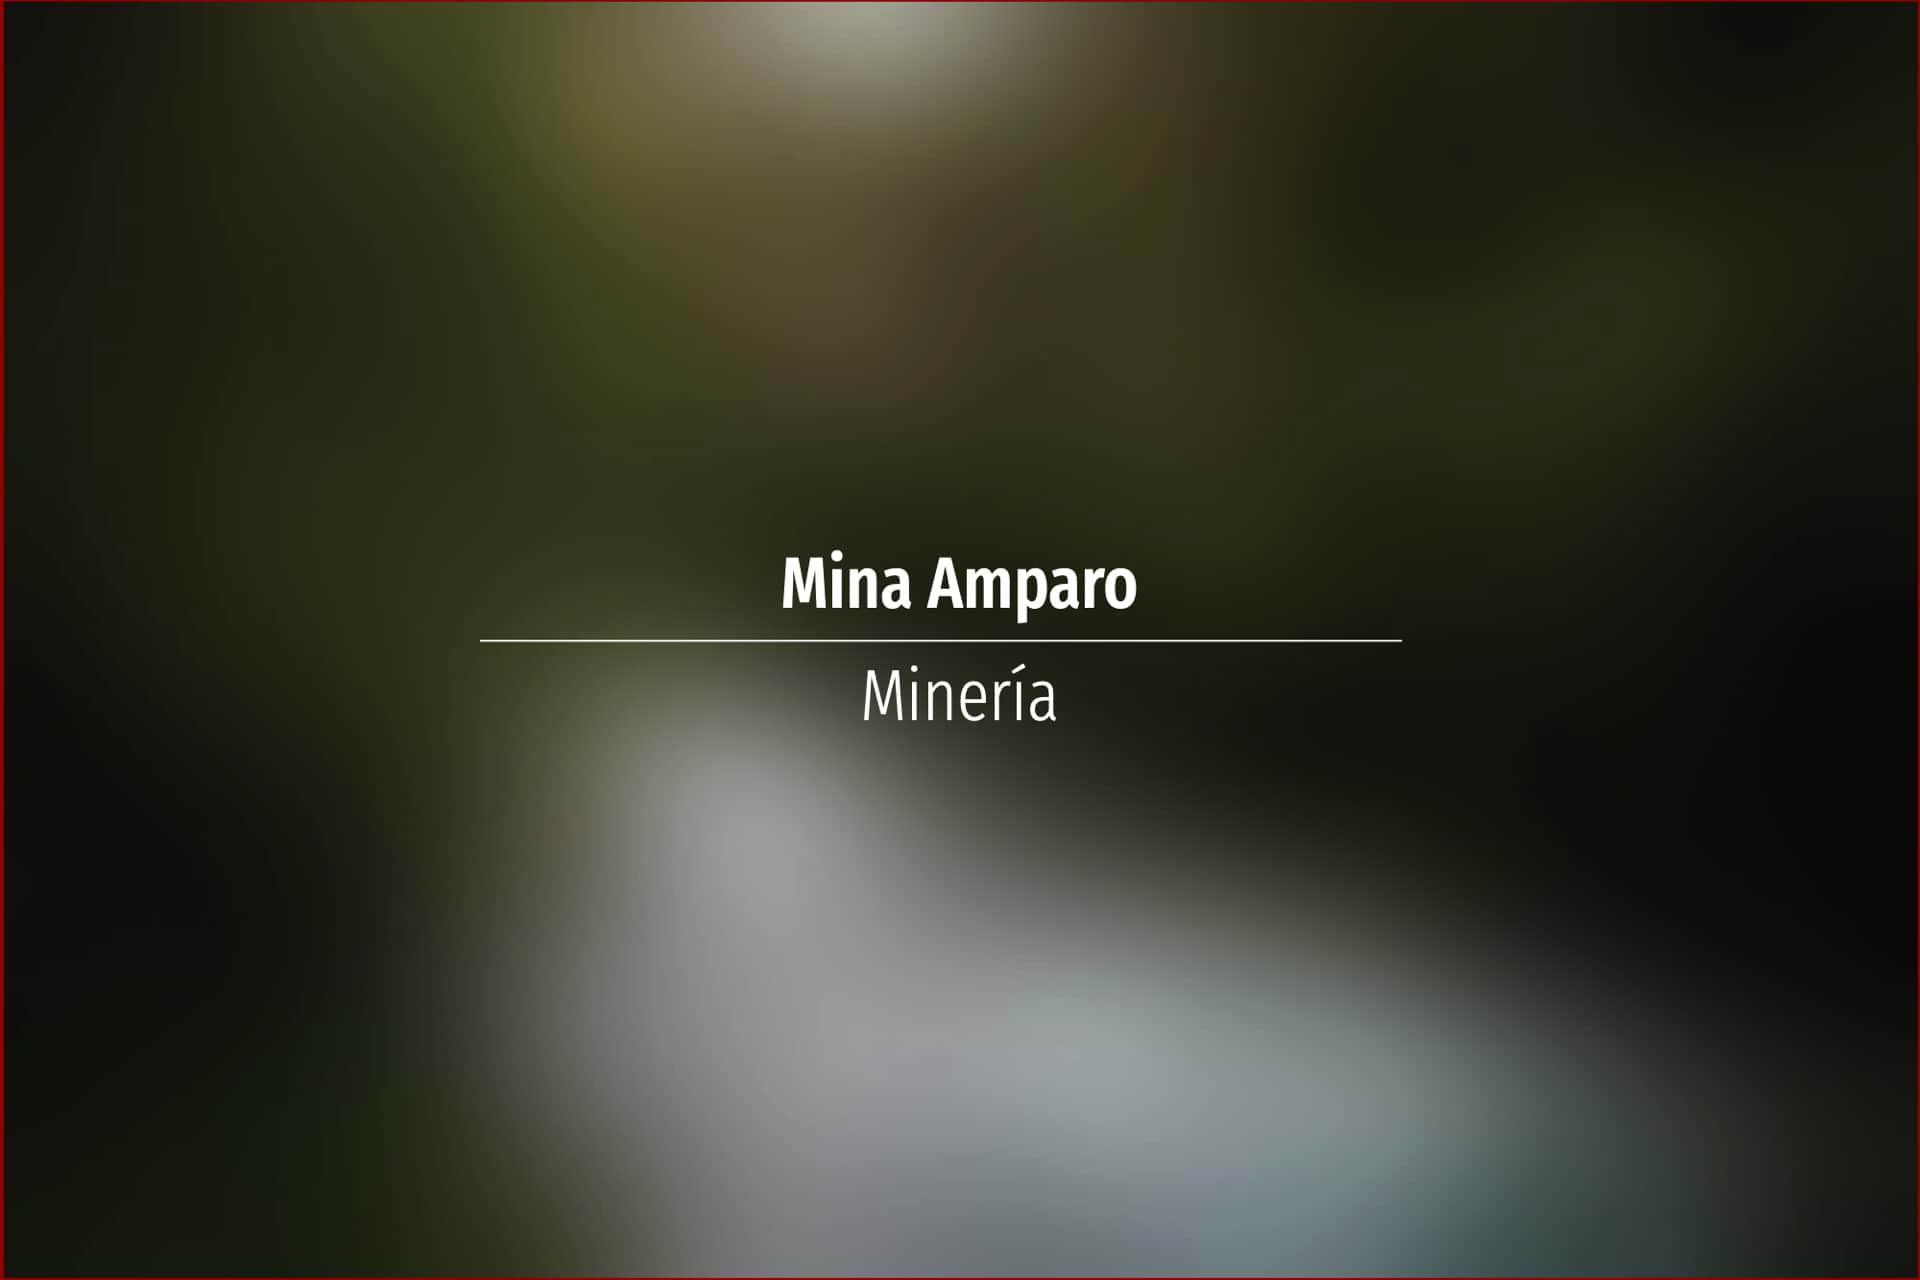 Mina Amparo